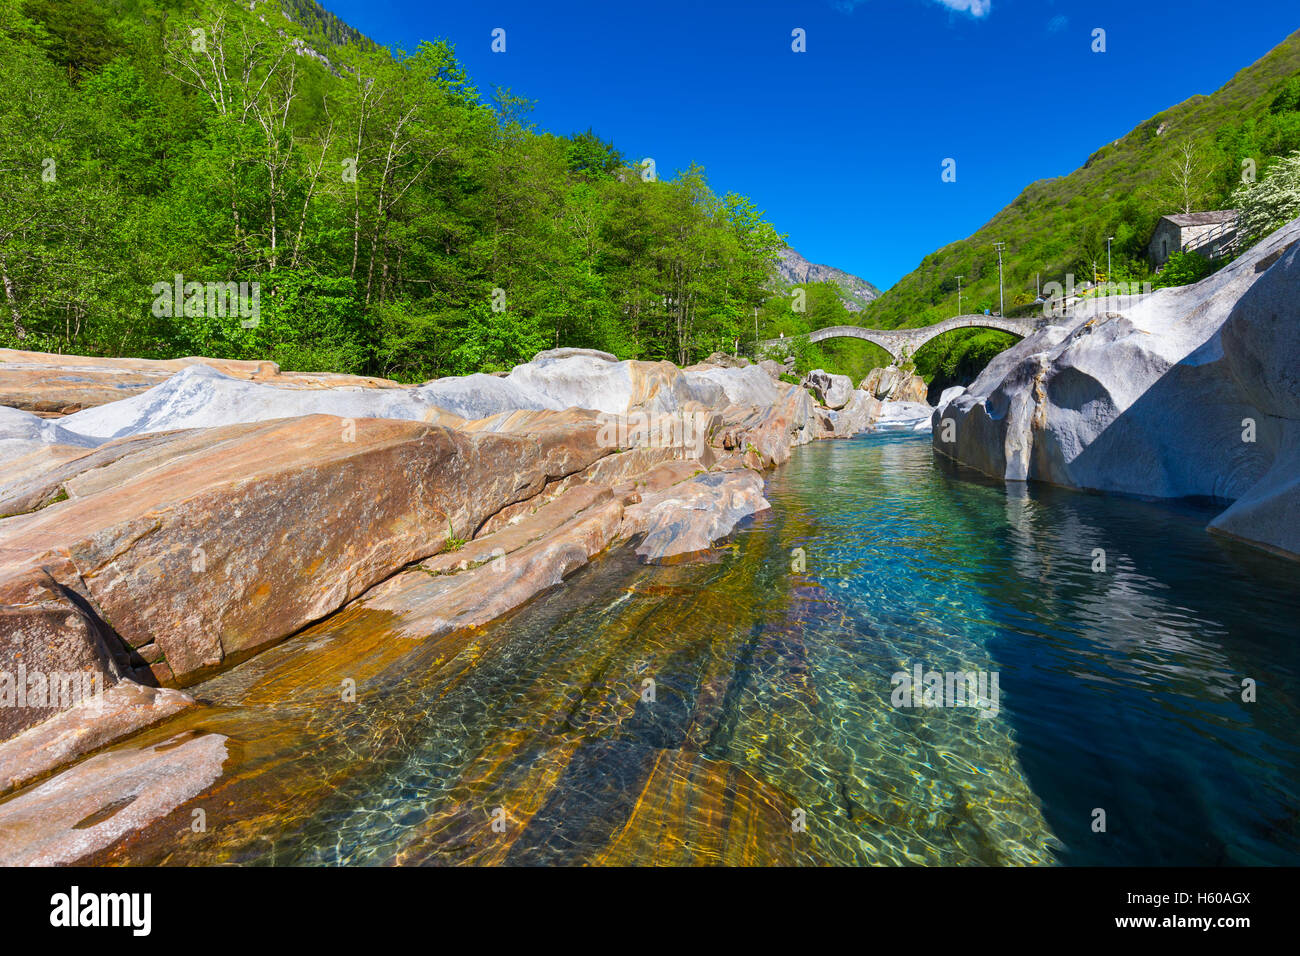 Doppelte steinerne Bogenbrücke am Ponte dei Salti mit Wasserfall,  Lavertezzo, Verzascatal, Tessin, Schweiz Stockfotografie - Alamy